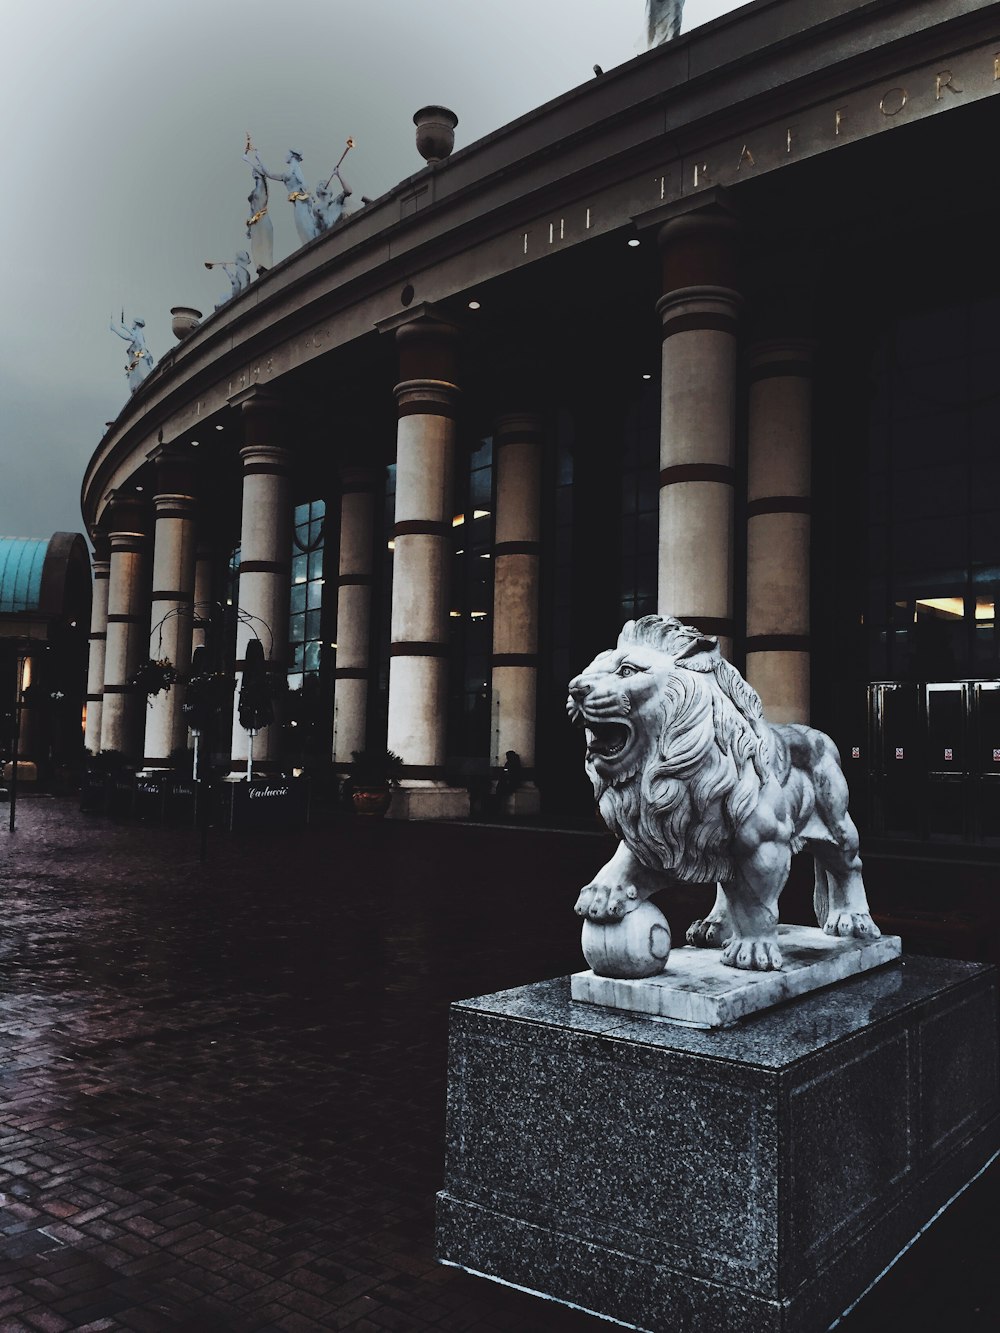 Statua di leone adulto su base di cemento davanti all'edificio con pilastri esterni